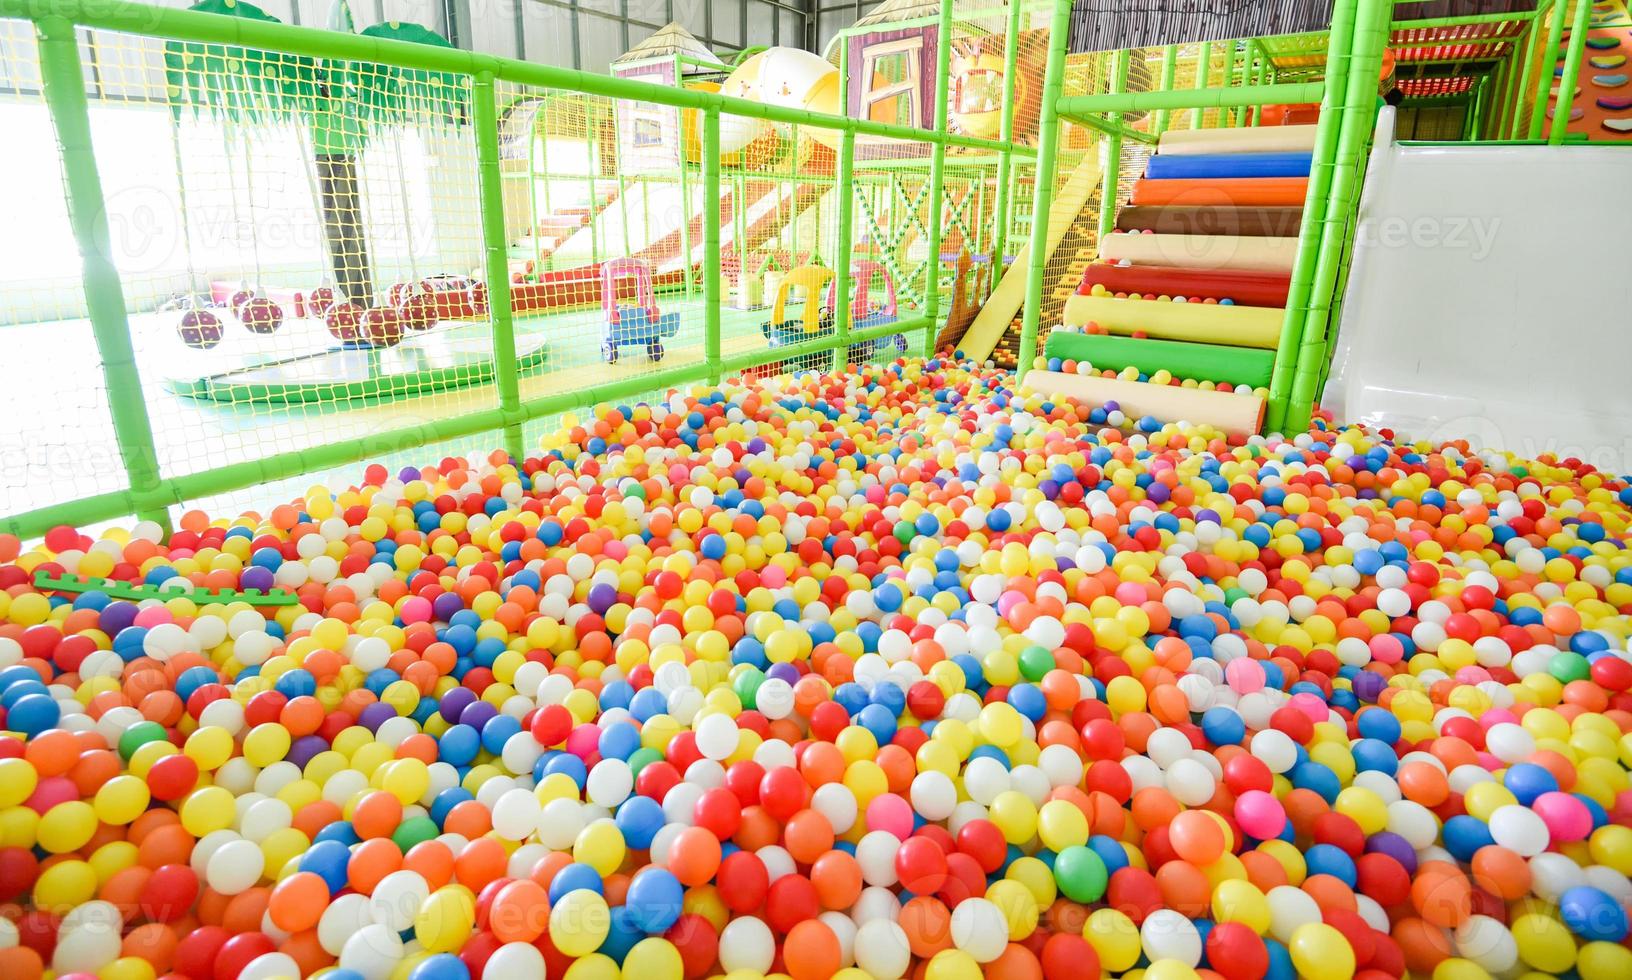 kinderspeeltuin binnen in pretpark met kleurrijke ballen om te spelen - in de prachtige kinderspeeltuin bal gekleurd plastic van speelkamer foto